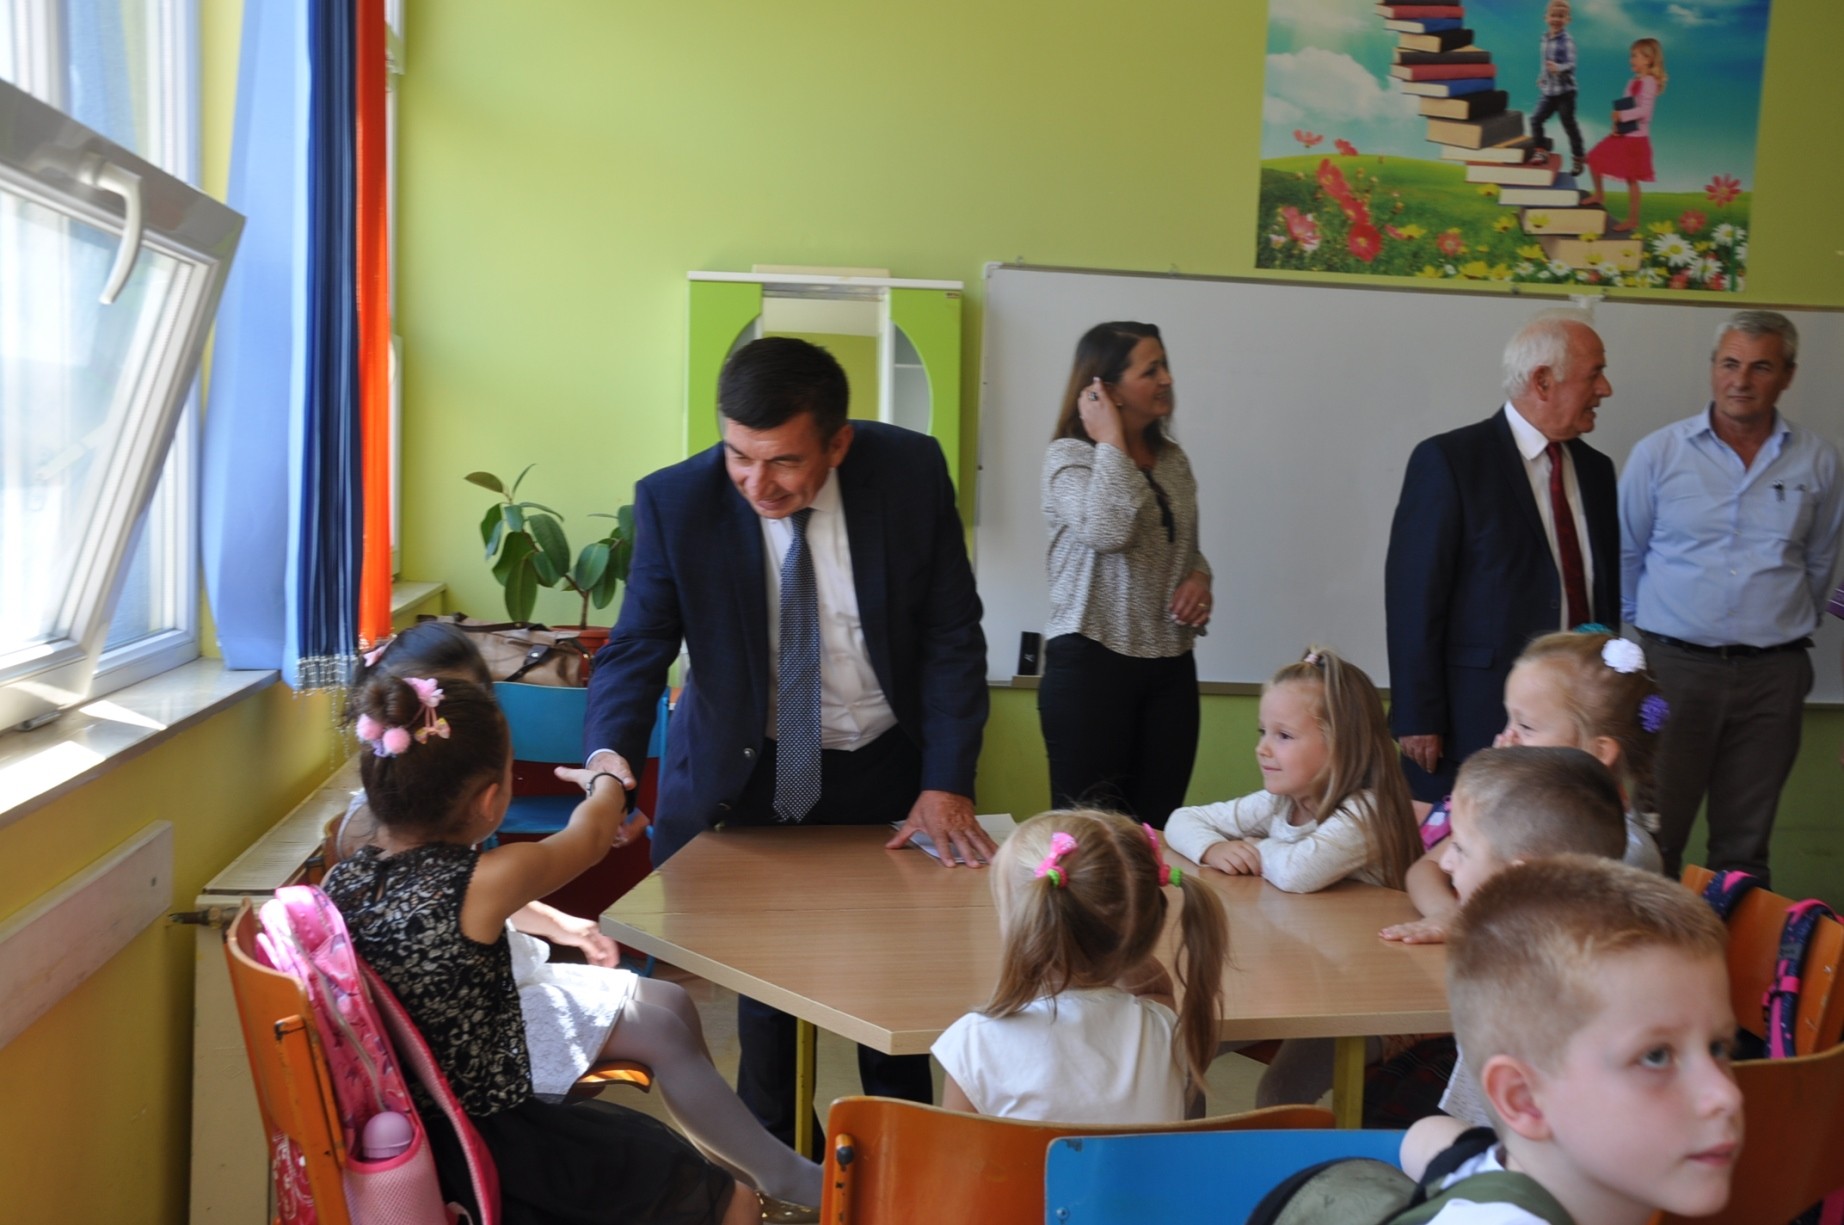 Ministri Bajrami shpërndau Abetaren dhe përuroi një shkollë të re  